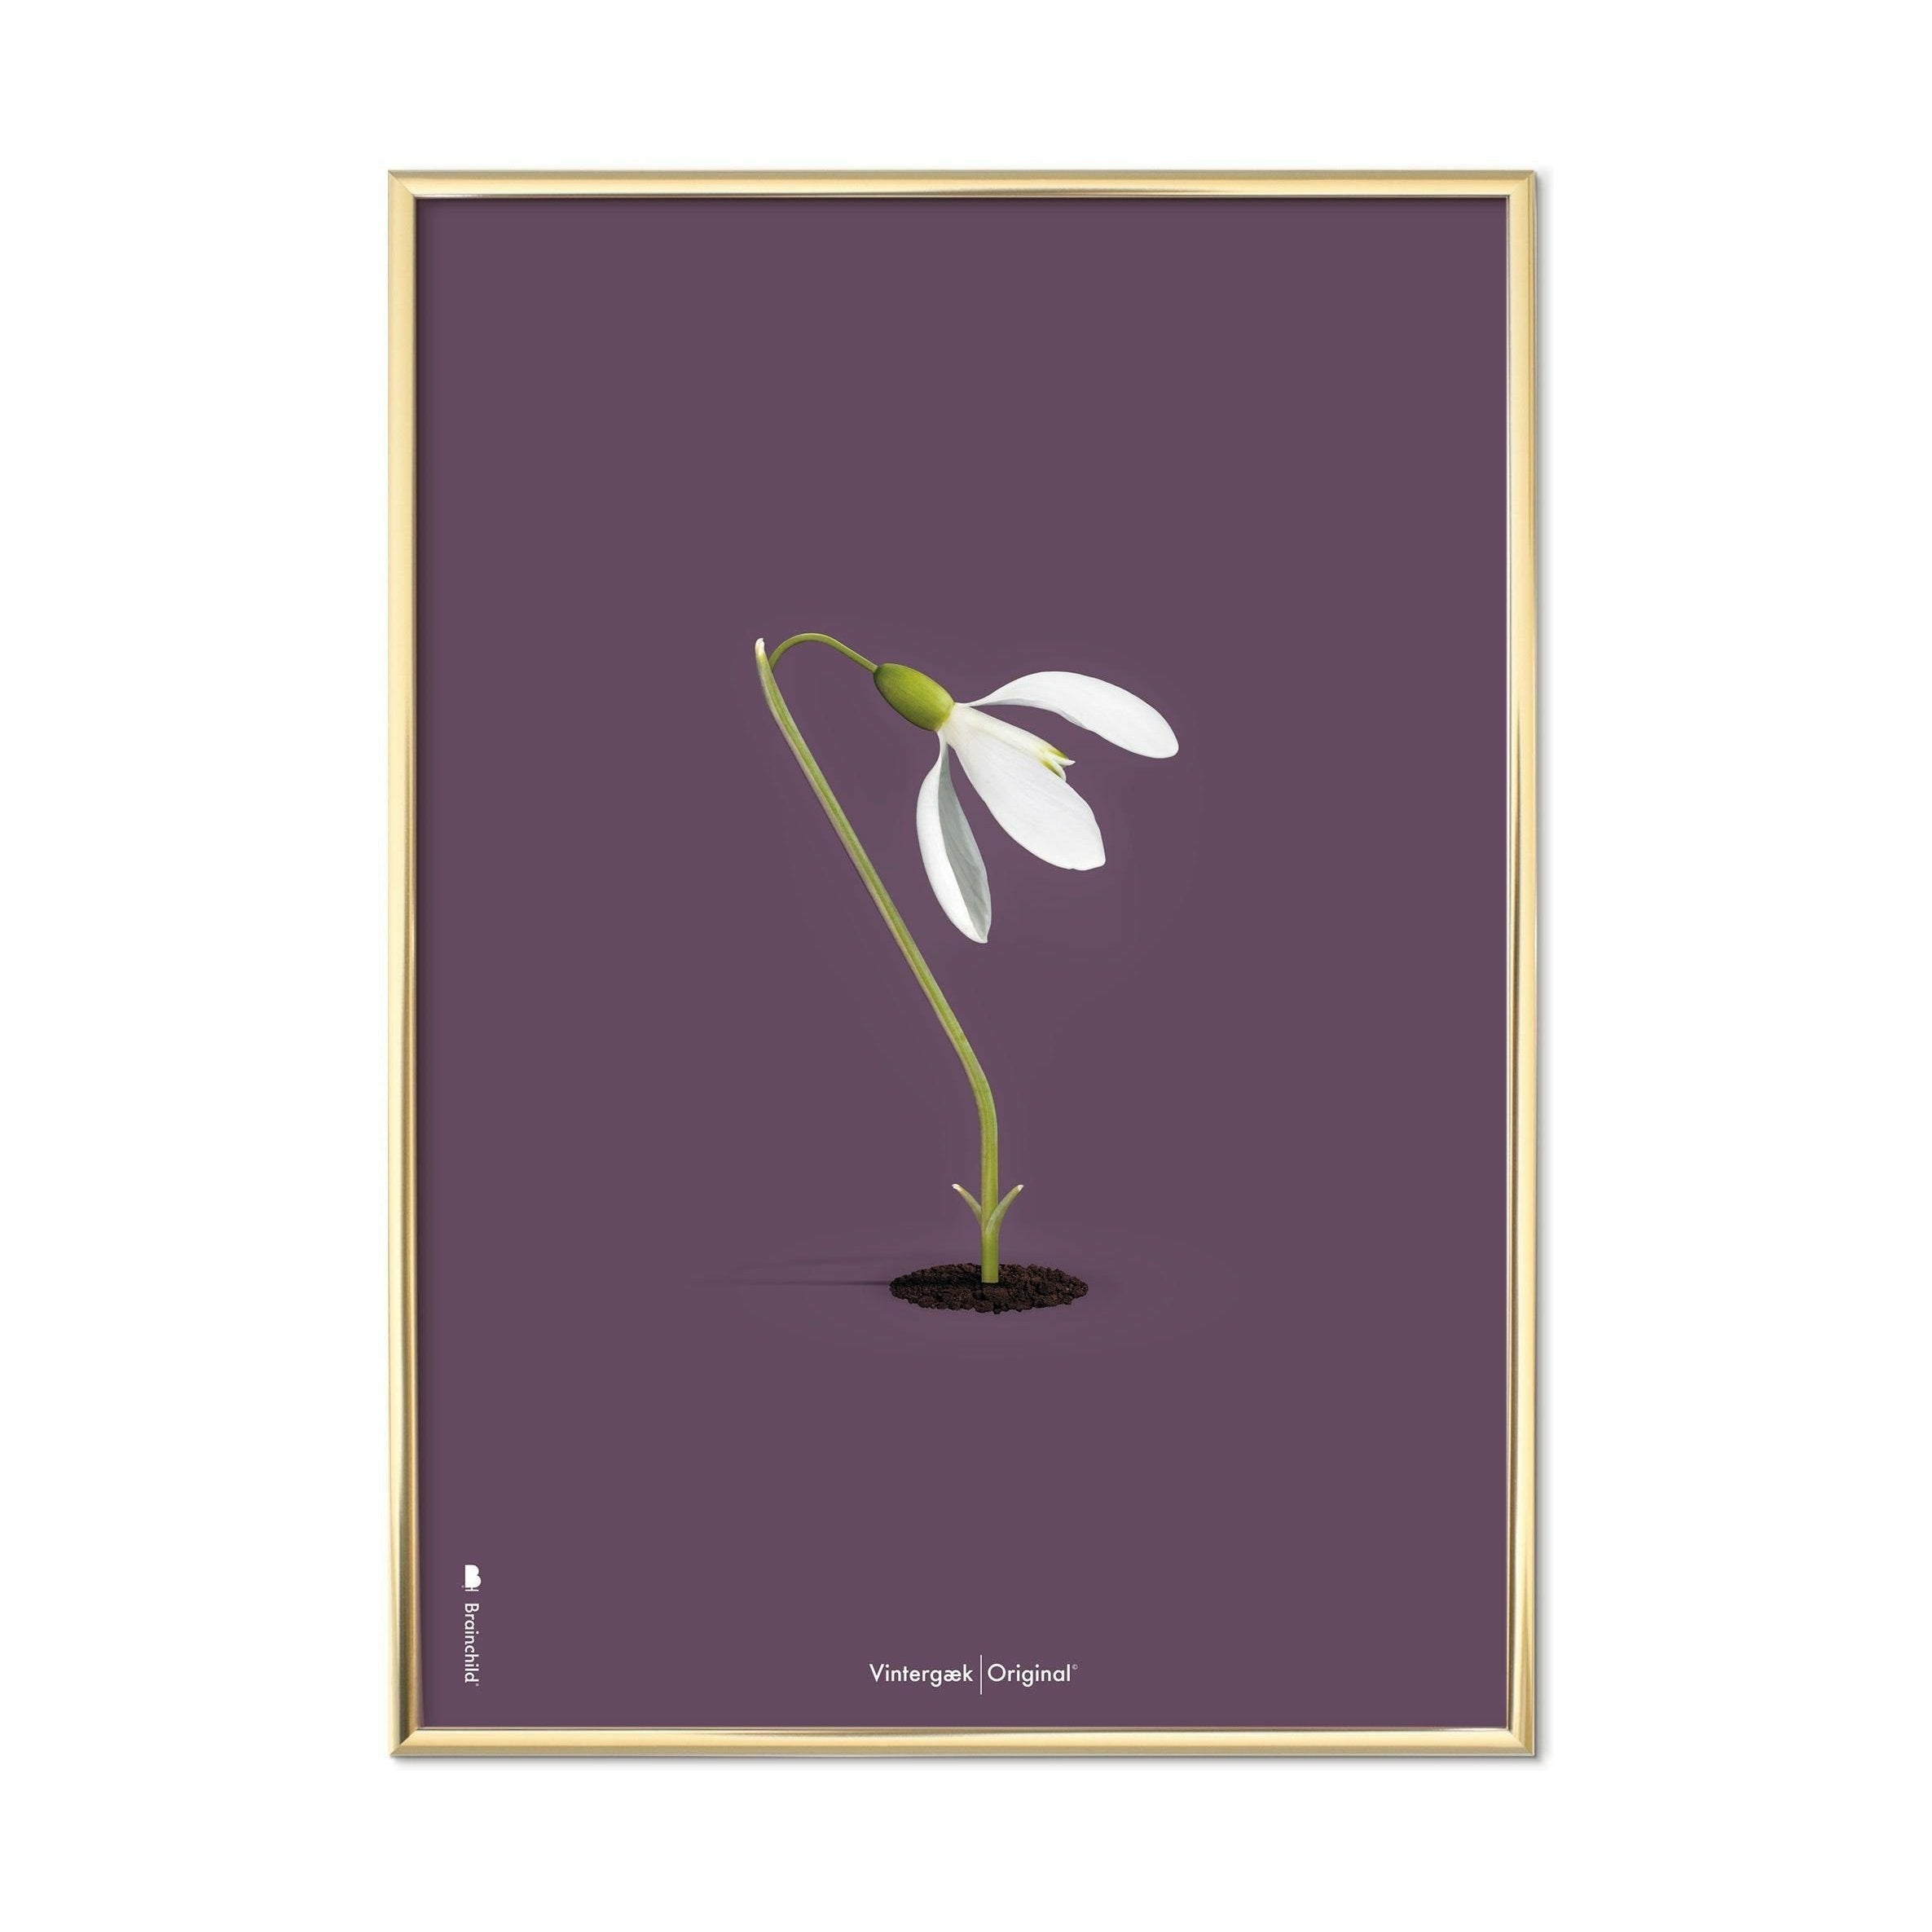 brainchild Snowdrop Classic juliste, messinkivärinen runko 50x70 cm, violetti tausta